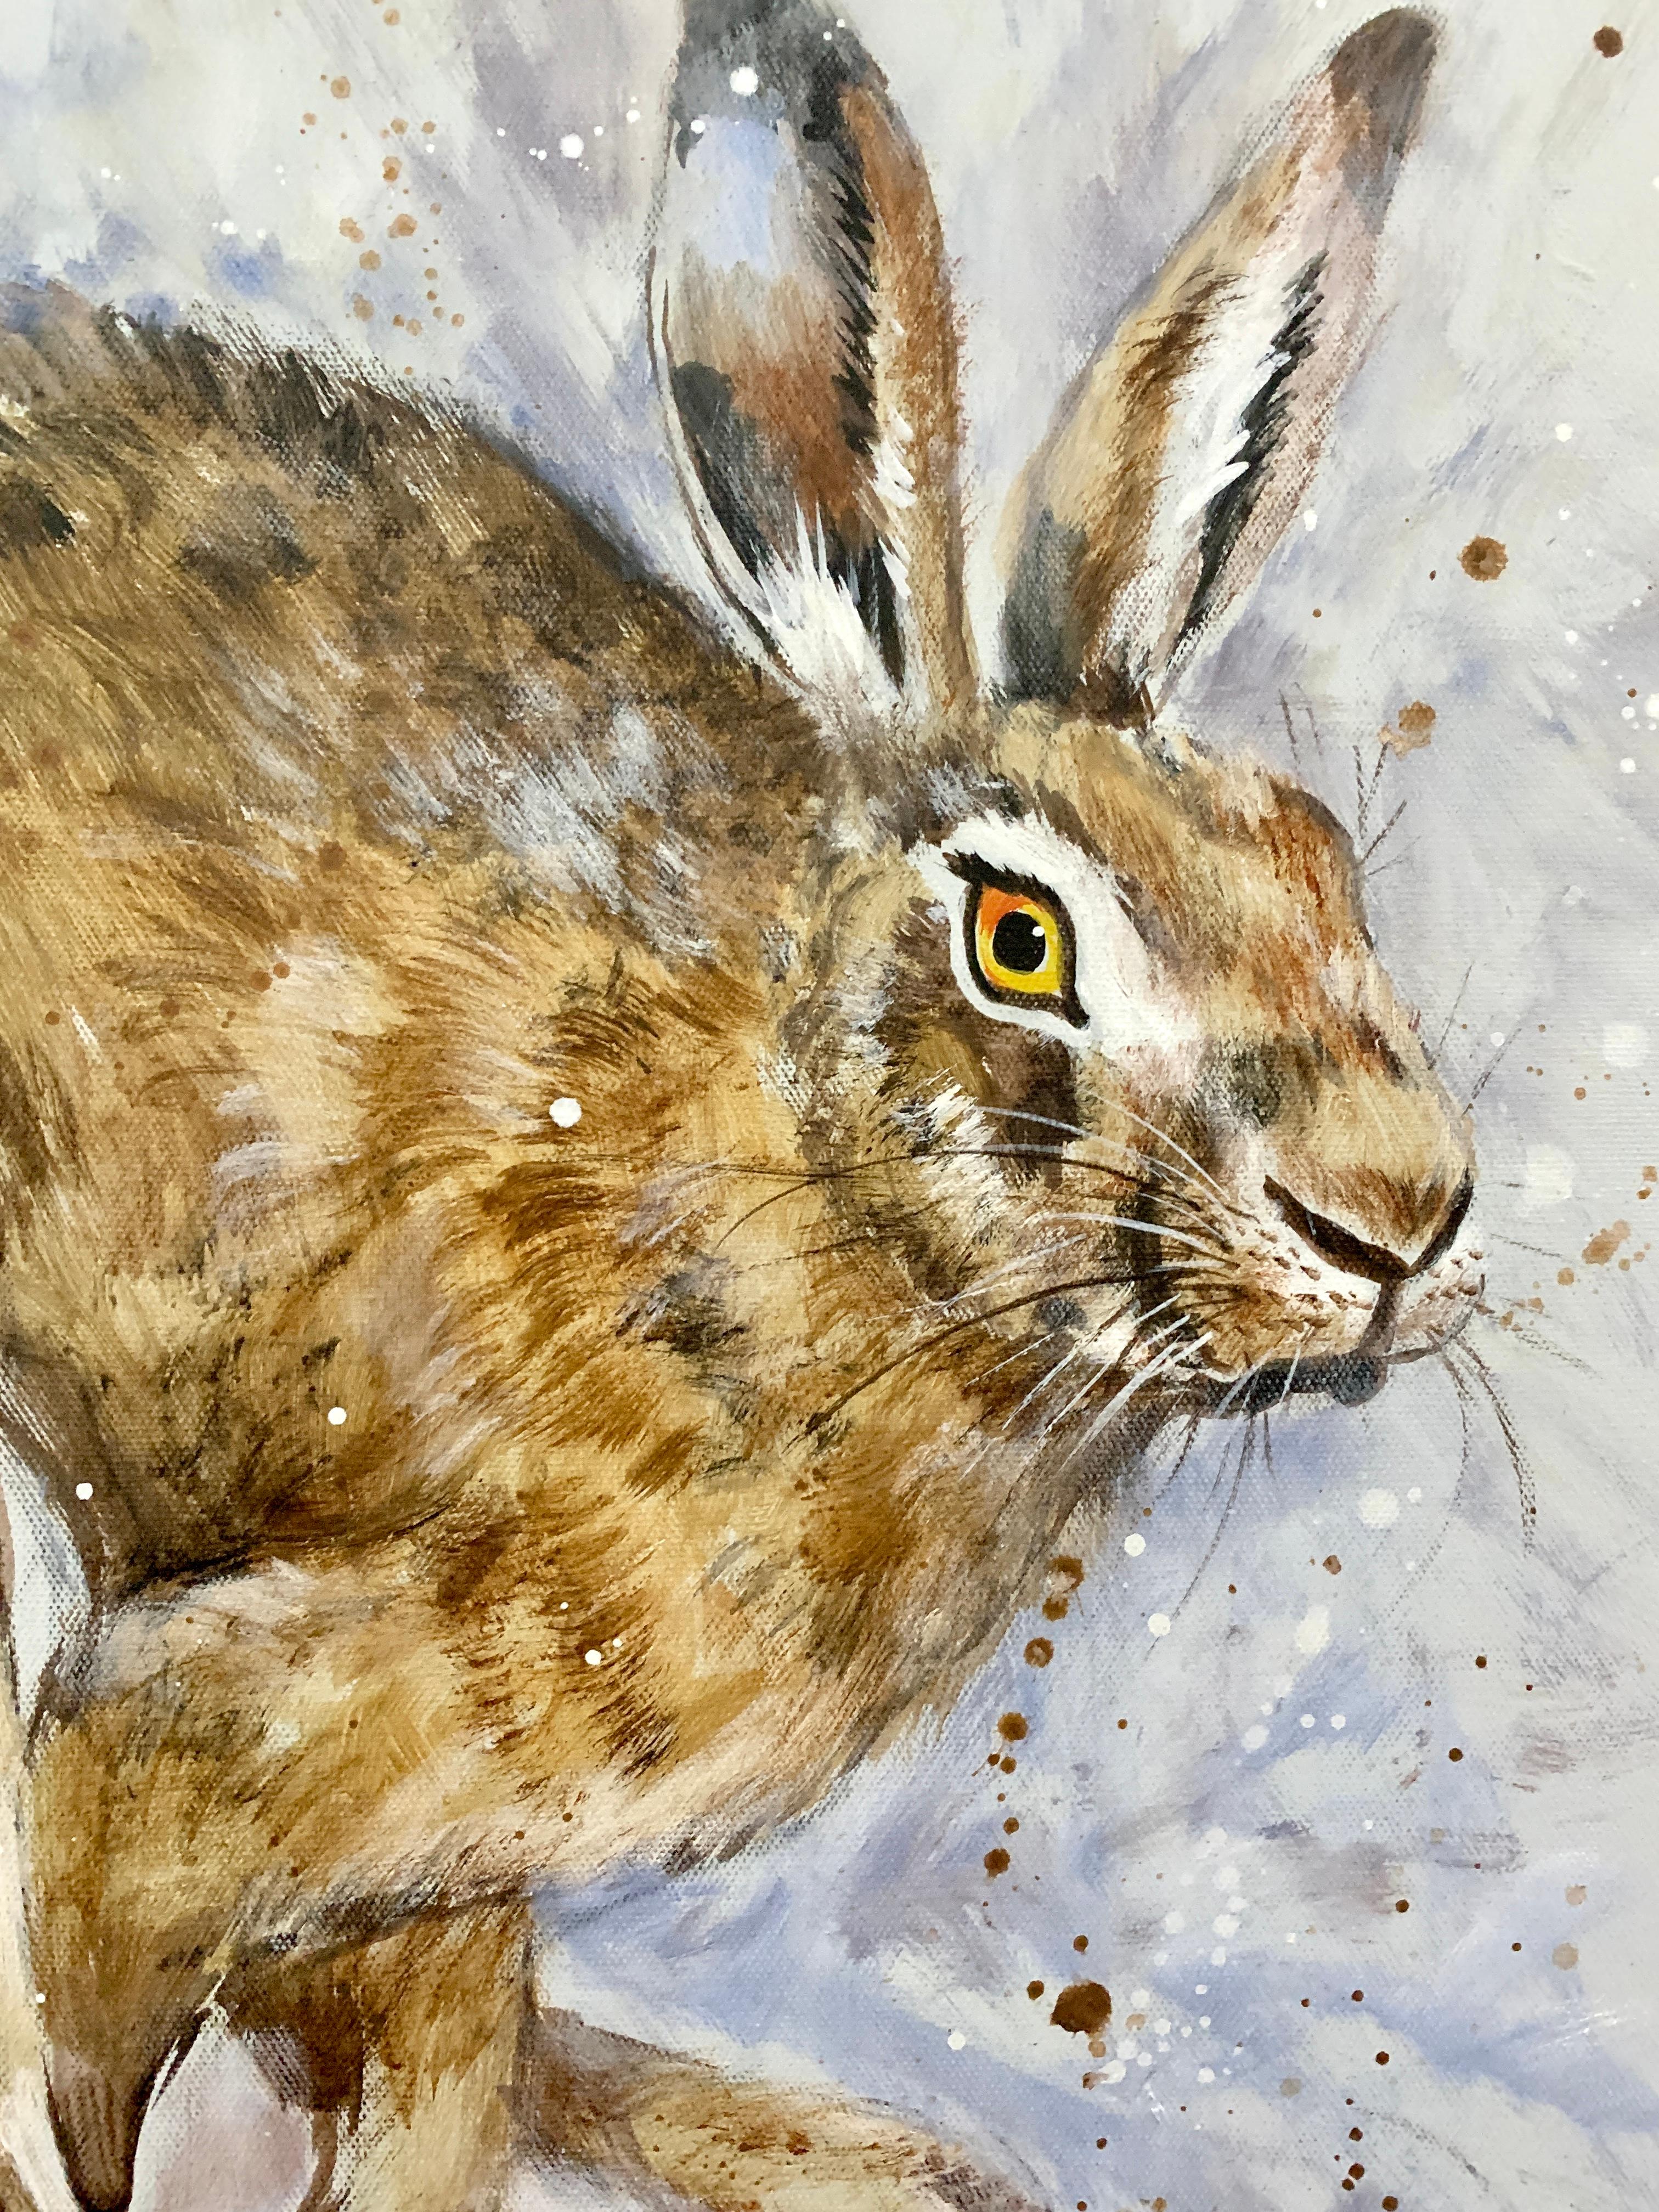 Englisches, lustiges Ölgemälde auf Leinwand aus dem 20. Jahrhundert, Porträt eines laufenden oder springenden Hares – Painting von Ryan